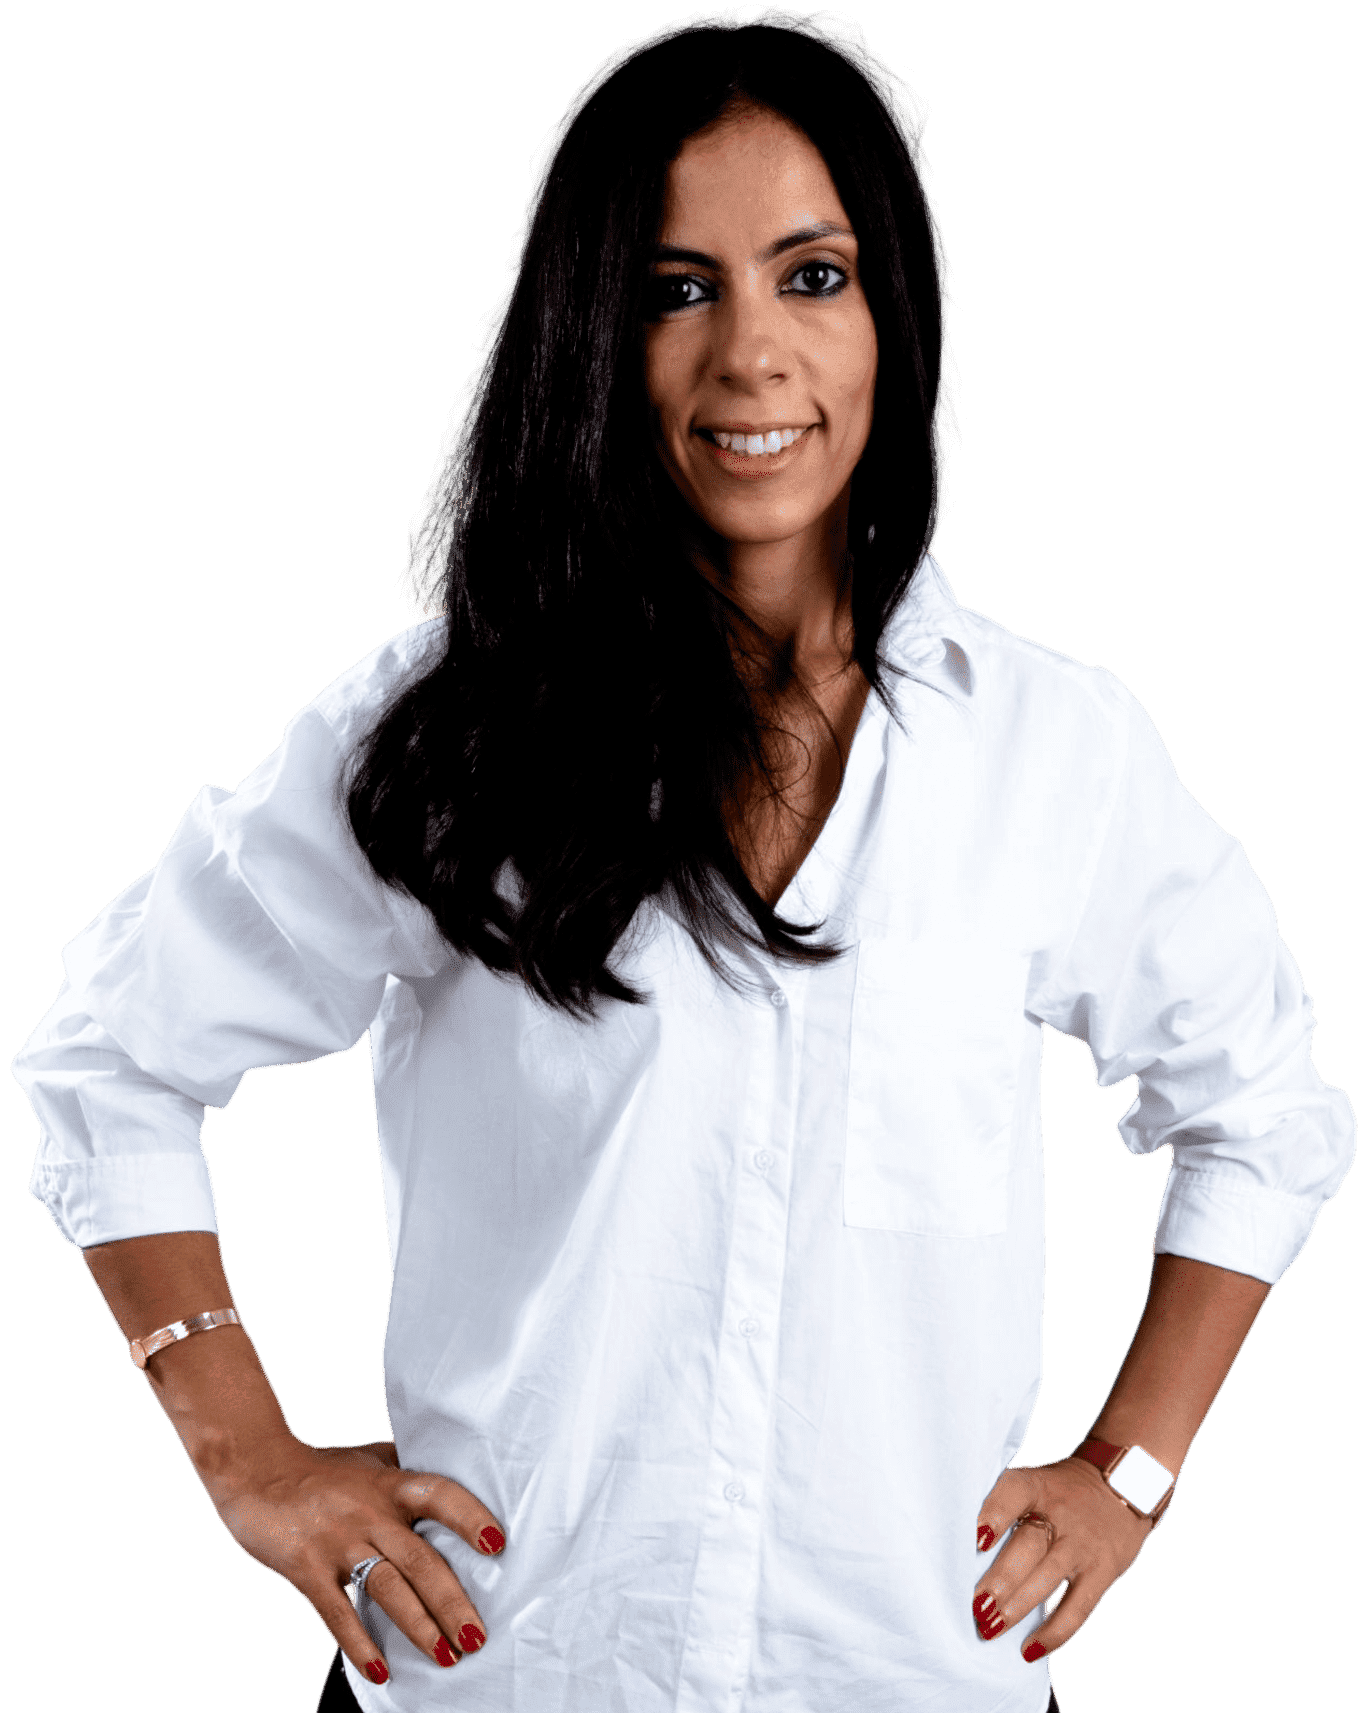 Fatima Aït-Ben-Moussa - Consultante seo et stratégie marketing. Créatrice du podcast Inspirons le féminin